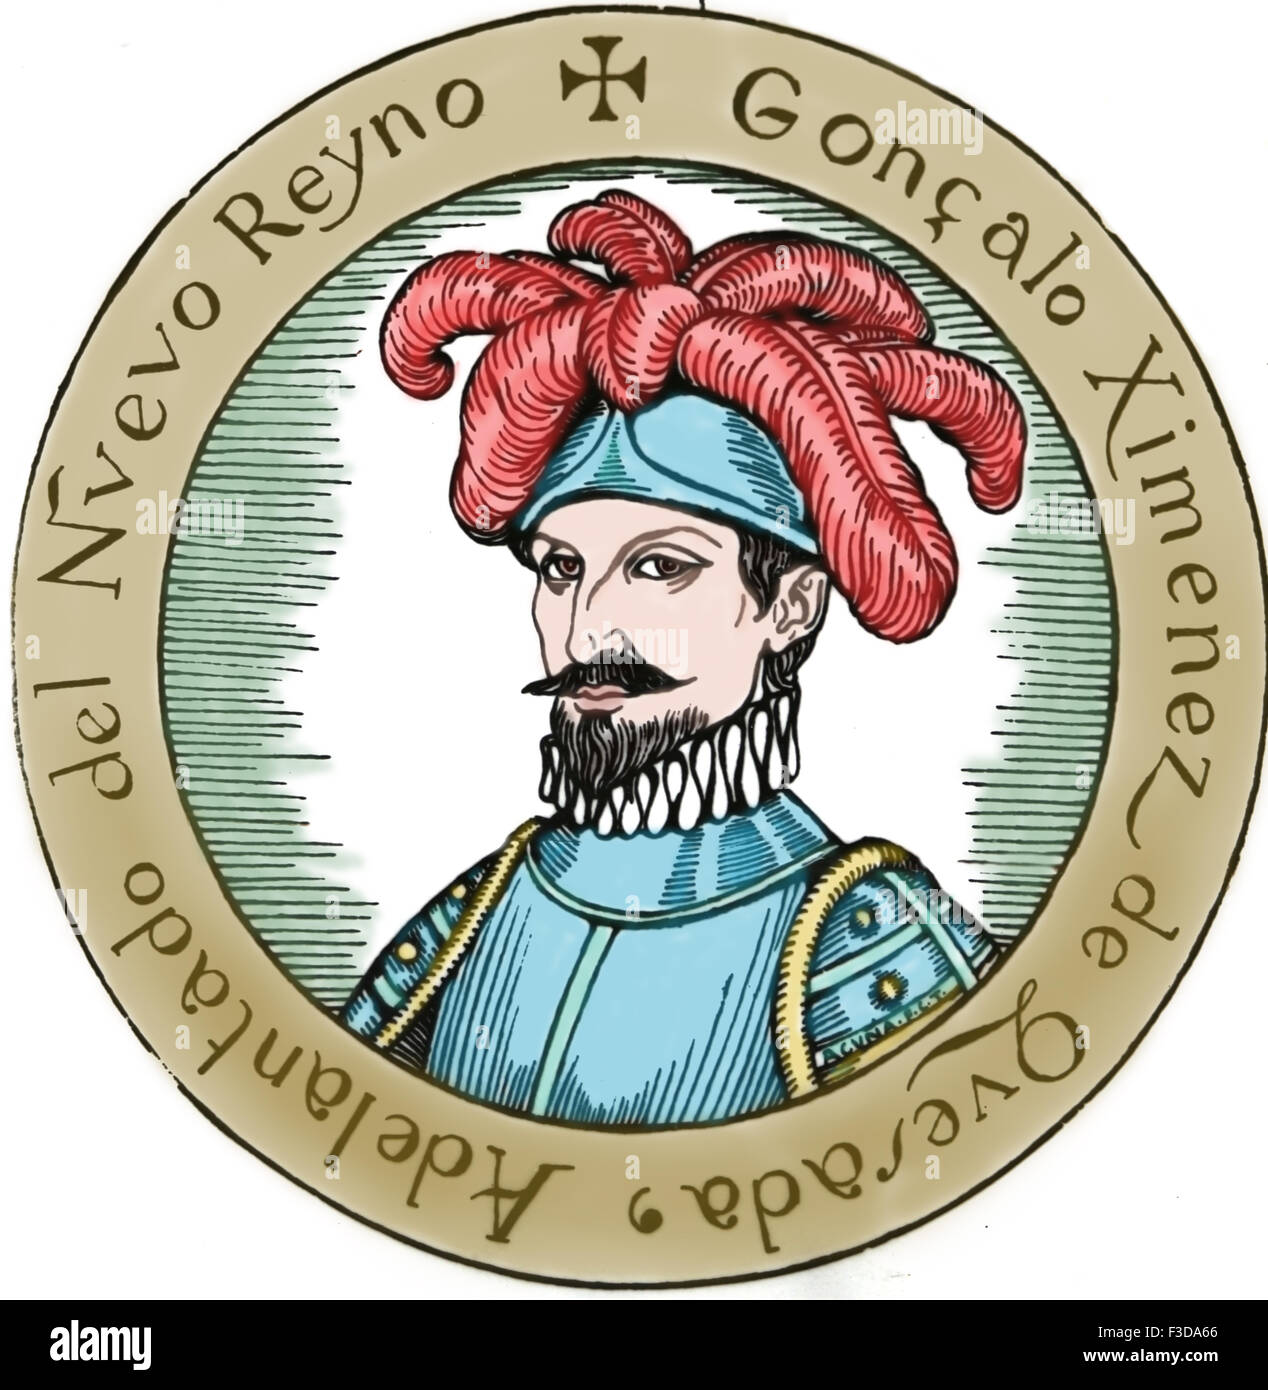 Gonzalo Jimenez de Quesada (1509-1579). Esploratore spagnolo e conquistador in Colombia. Ritratto. Incisione del XIX secolo. Colore. Foto Stock